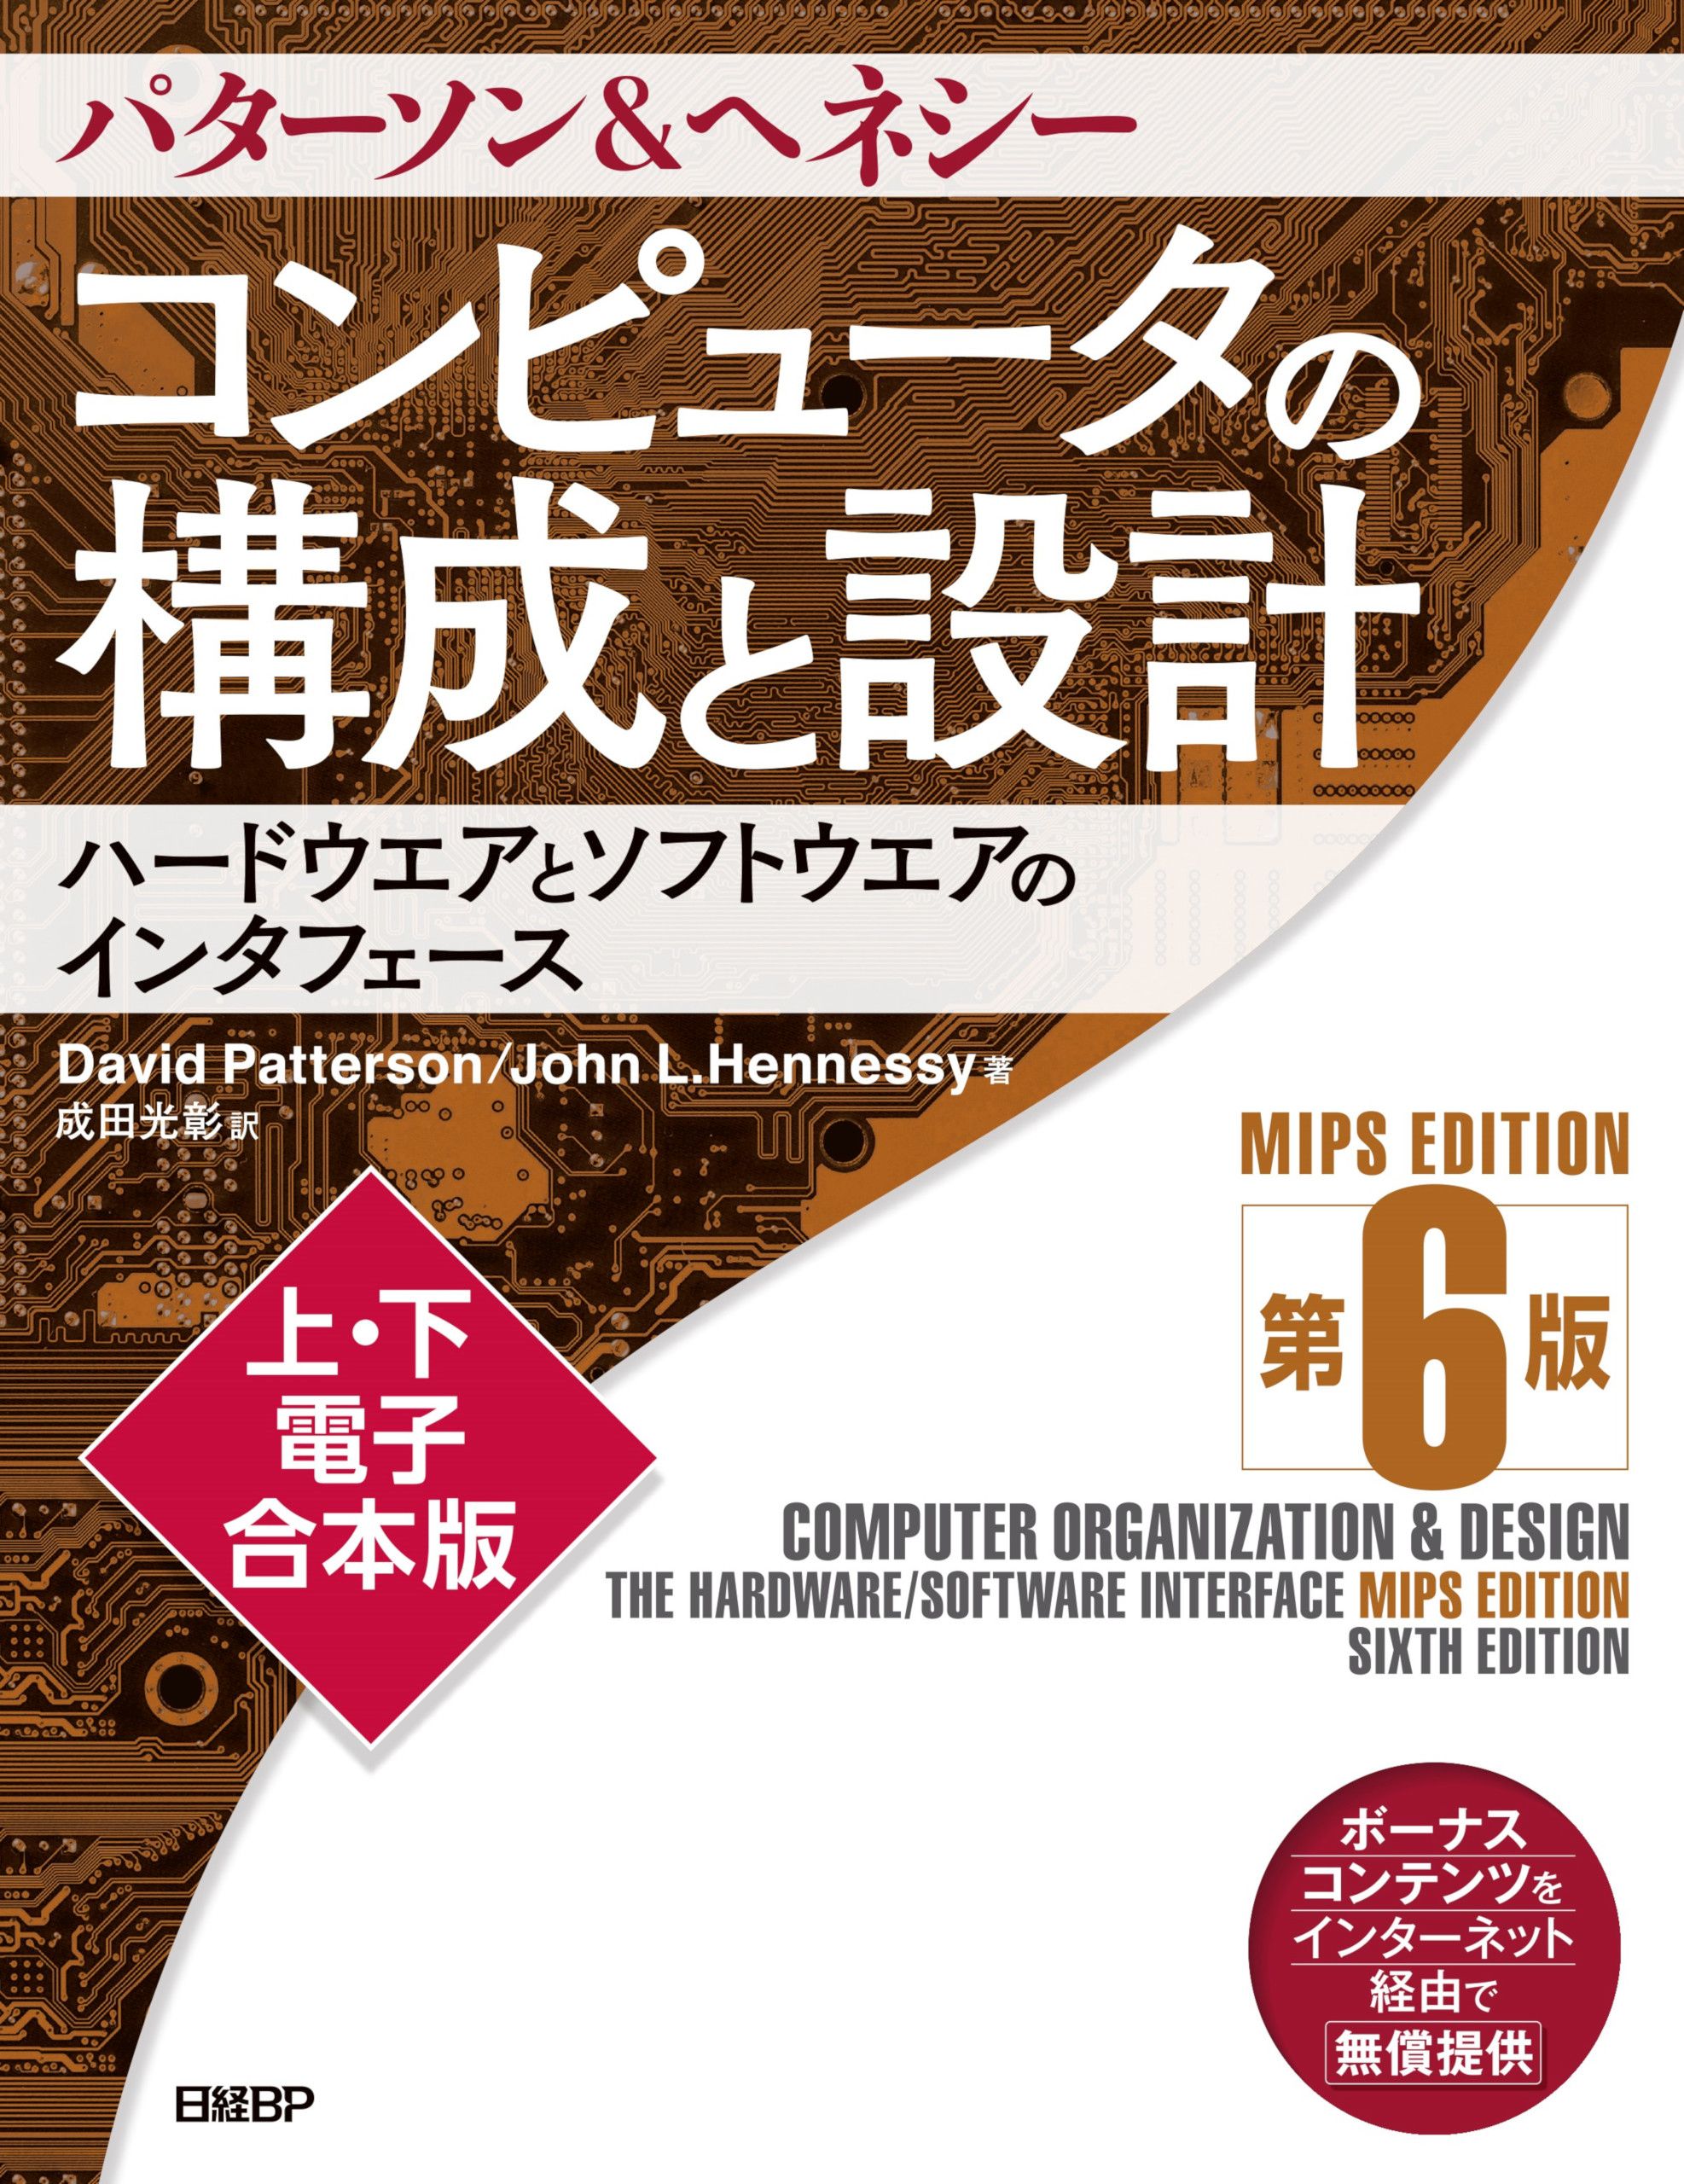 コンピュータの構成と設計 MIPS Edition 第6版 上・下電子合本版(書籍